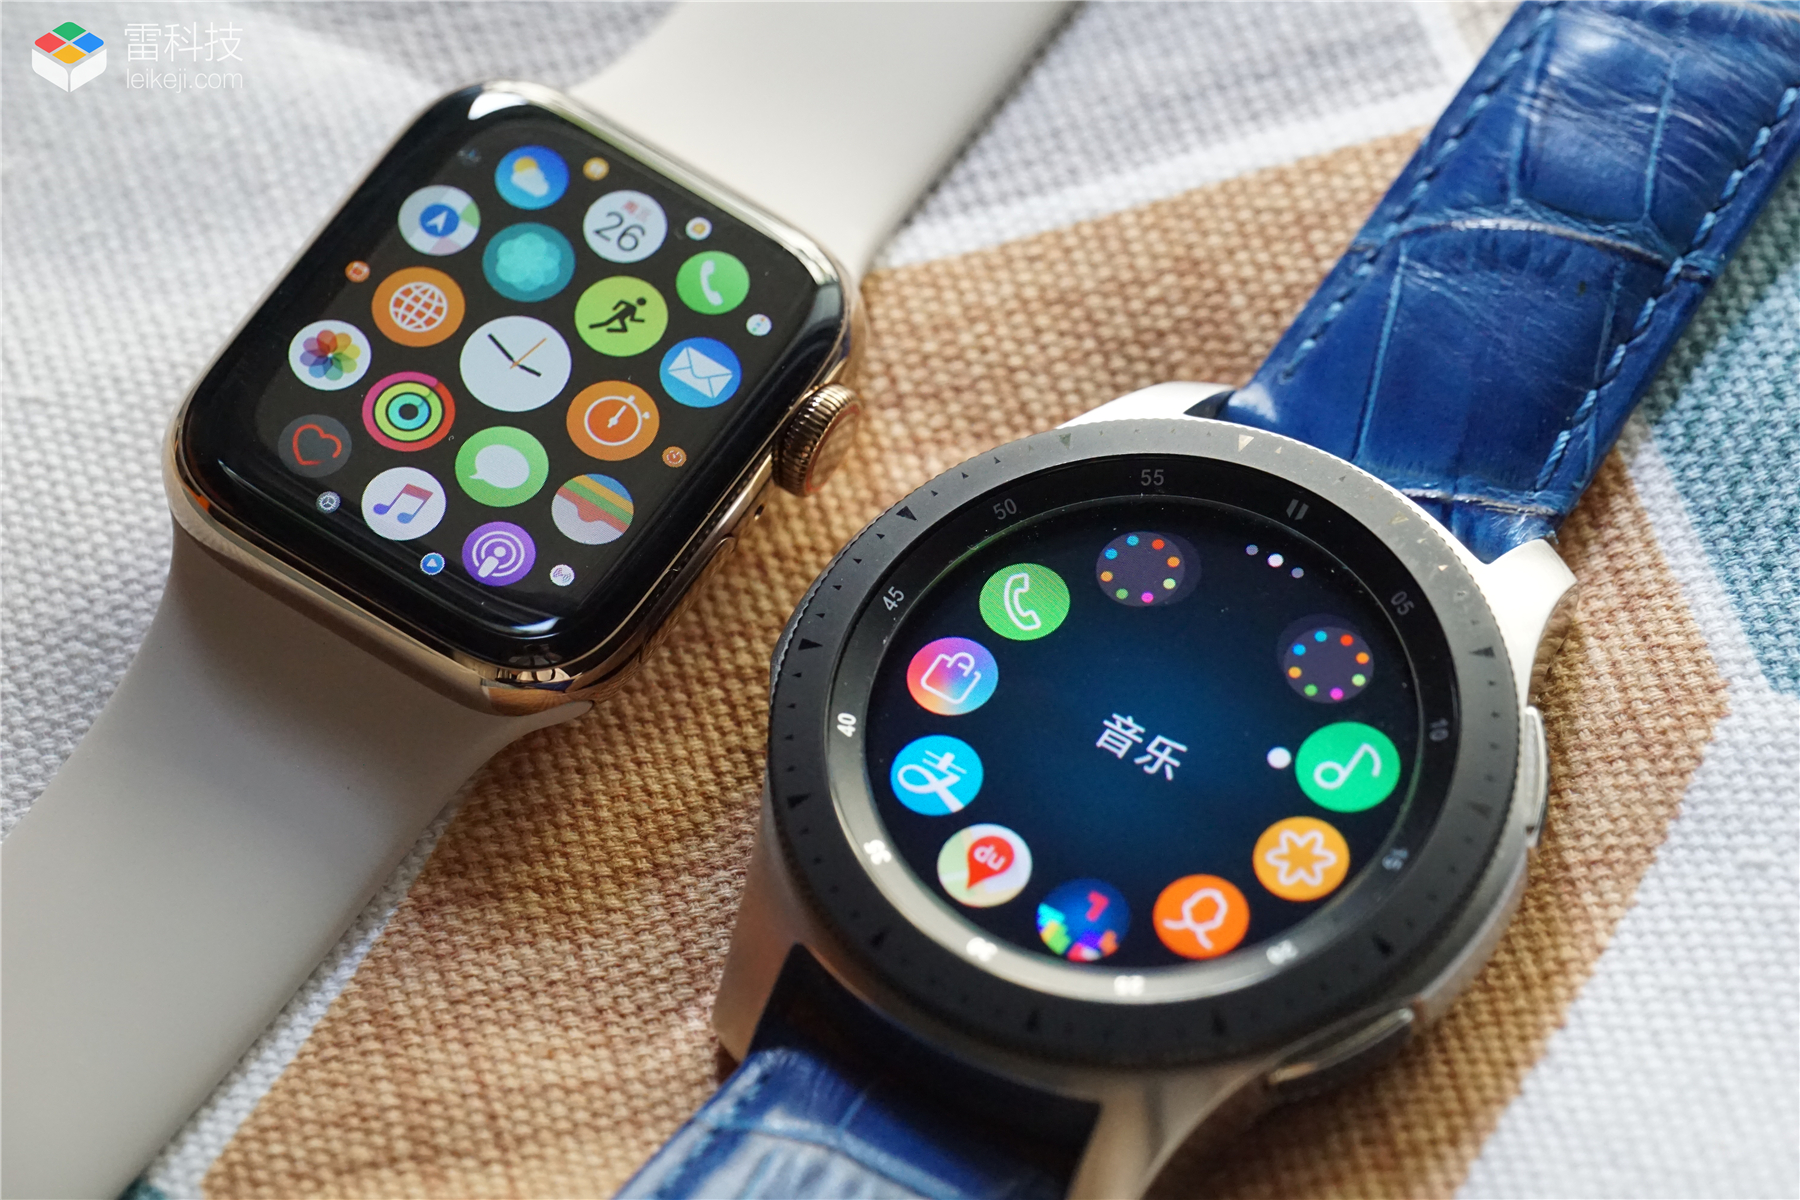 巅峰对决!苹果三星新款智能手表对比评测:哪款